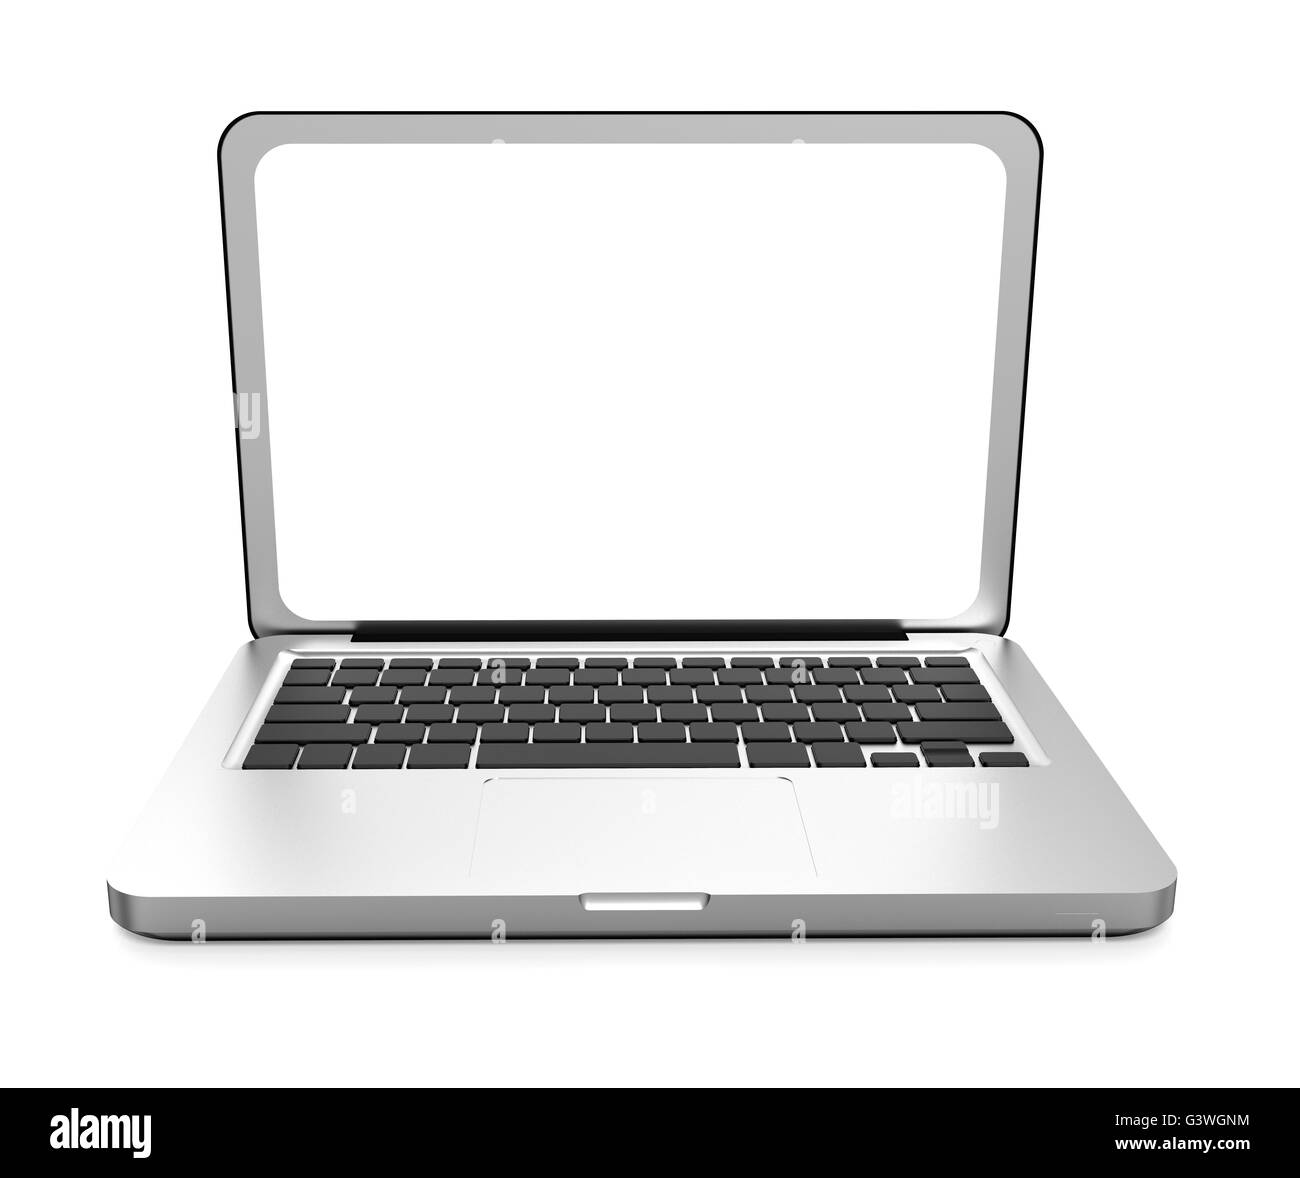 Argento notebook portatile isolato su sfondo bianco Foto Stock